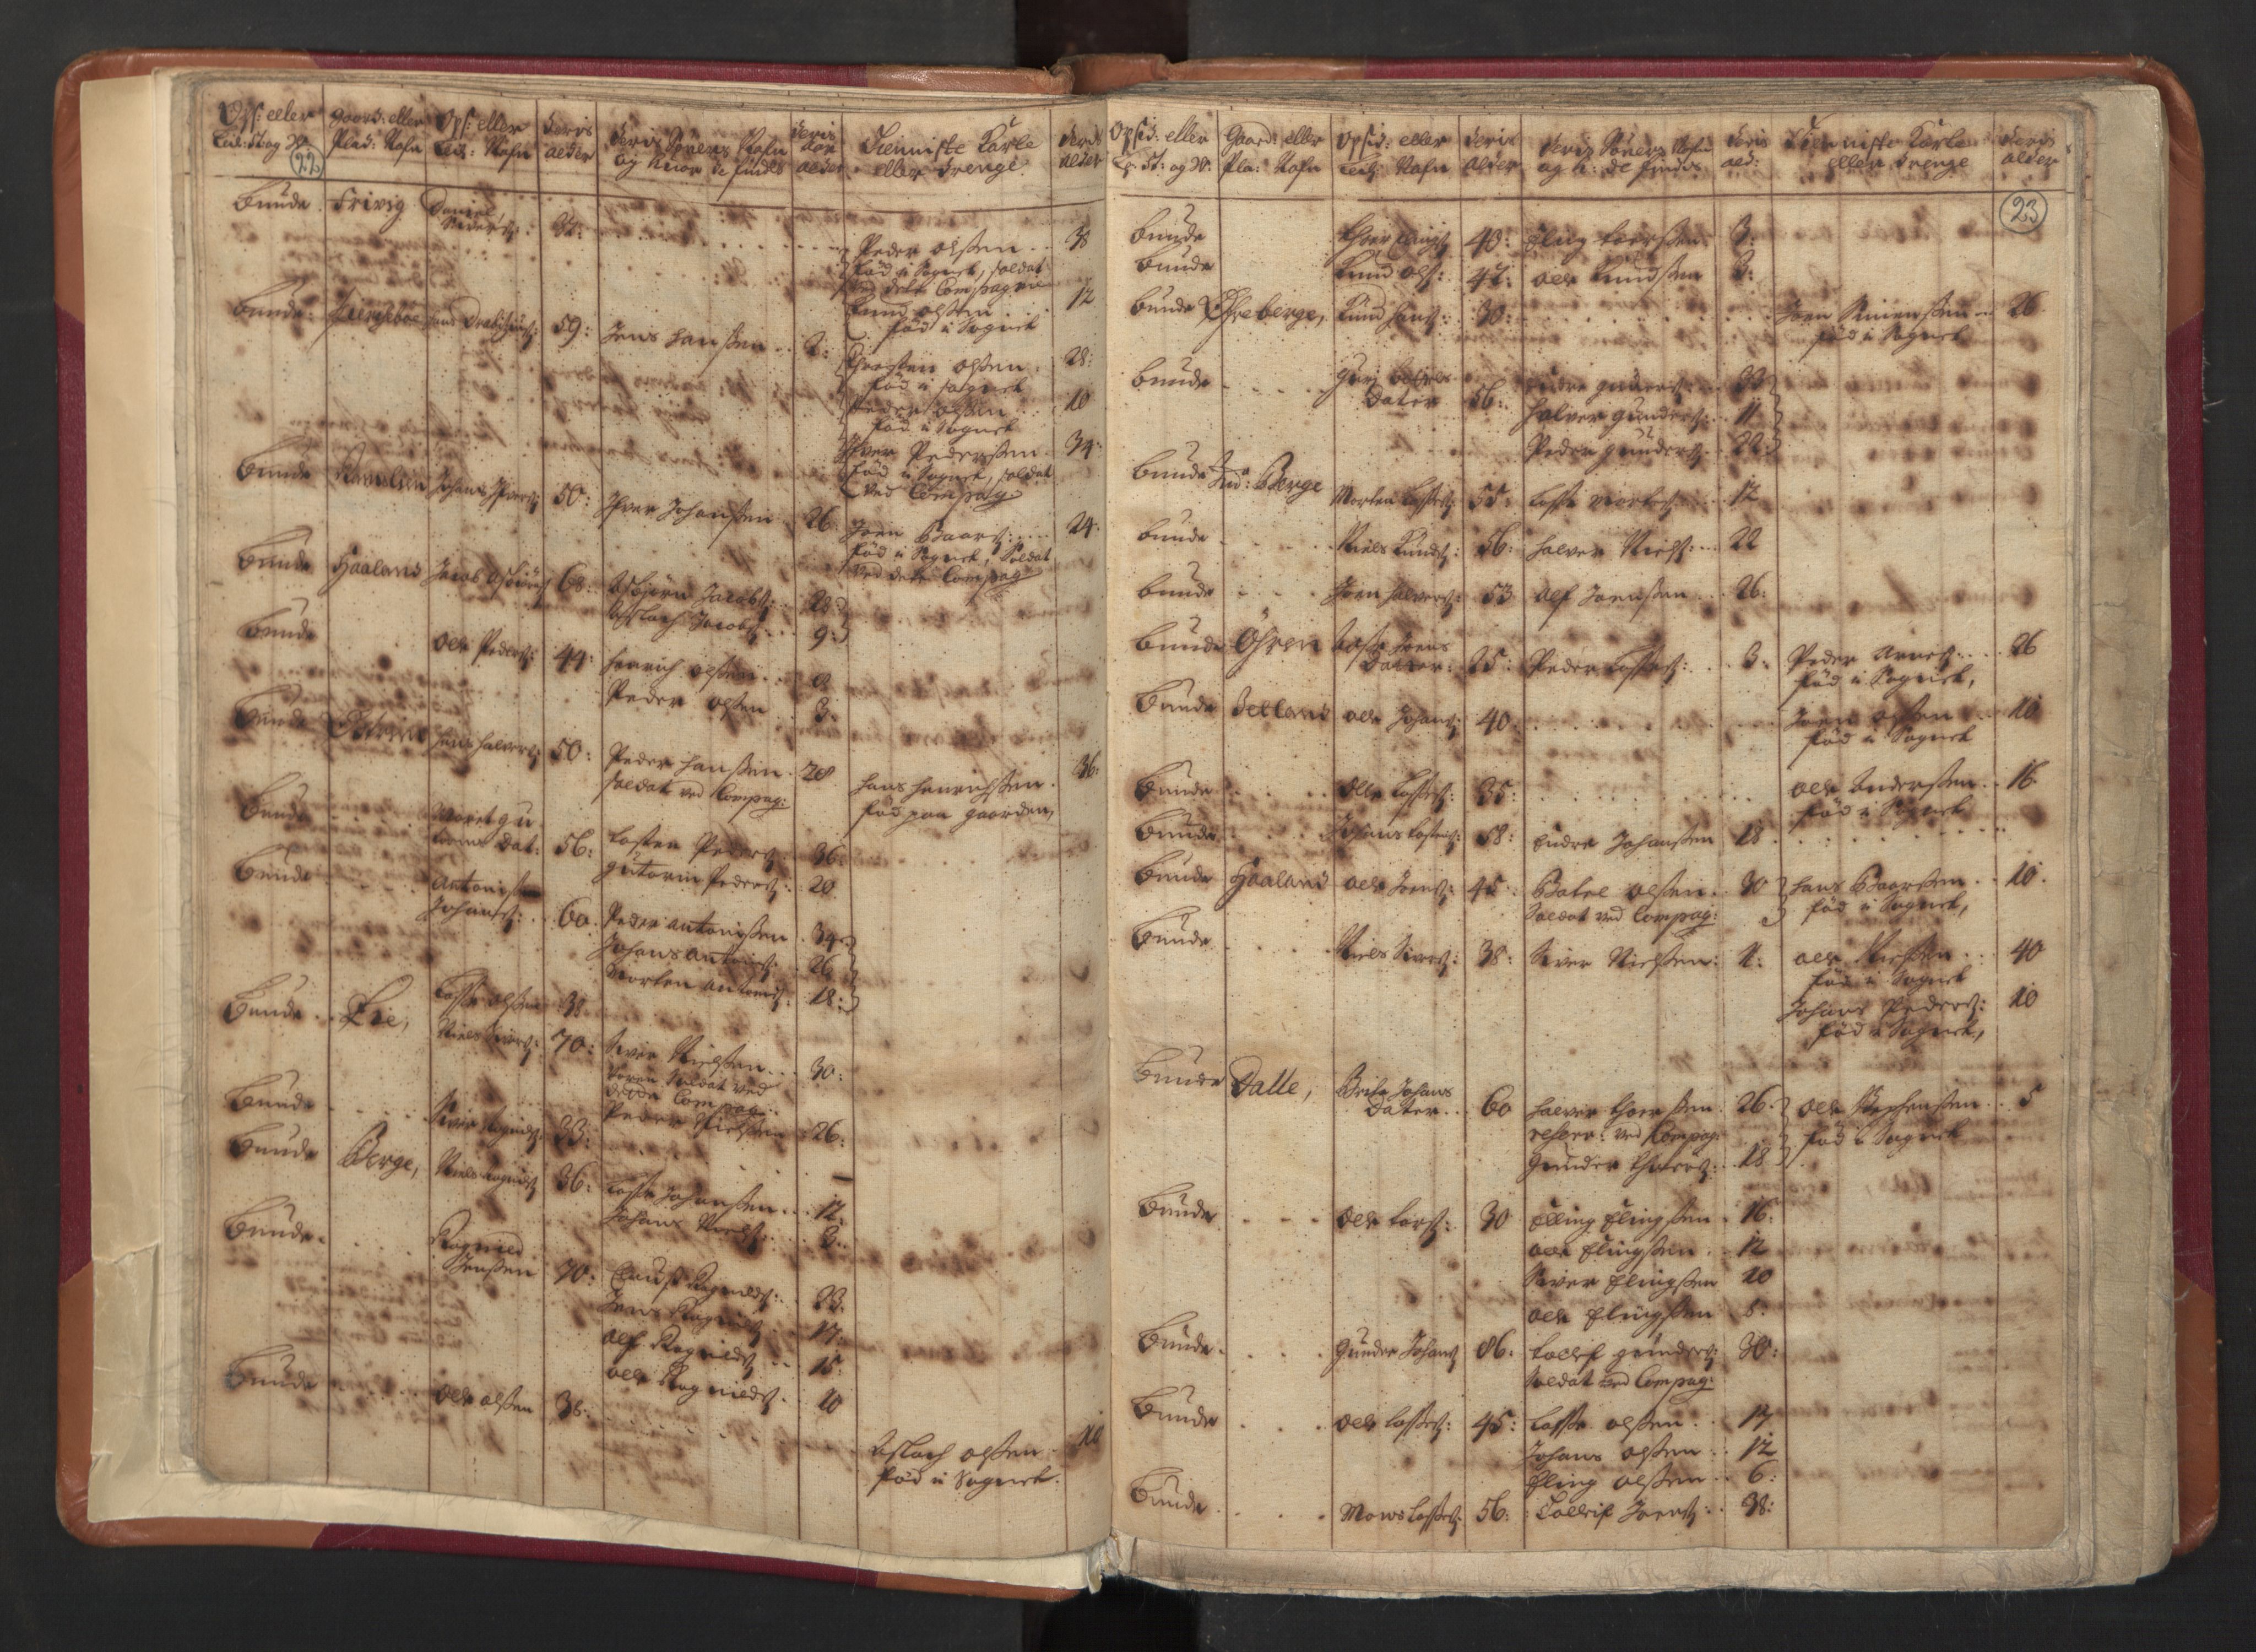 RA, Manntallet 1701, nr. 8: Ytre Sogn fogderi og Indre Sogn fogderi, 1701, s. 22-23